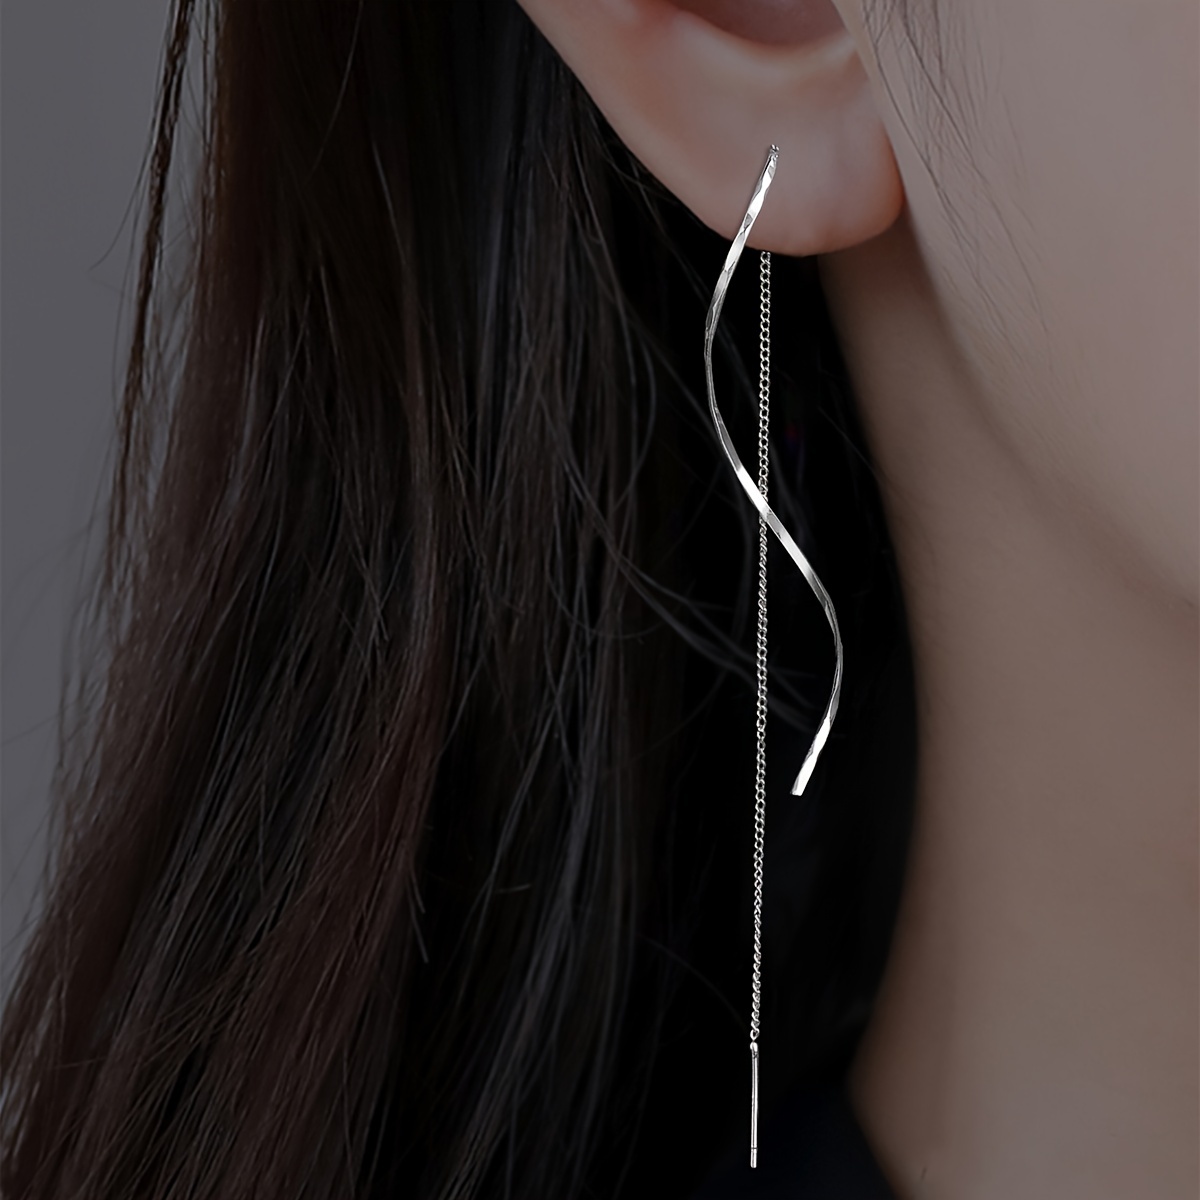 

S Shape Design Simple Tassel Threader Earrings Sweet Simple Elegant Birthday Gift For Women Fashion Wave Earrings